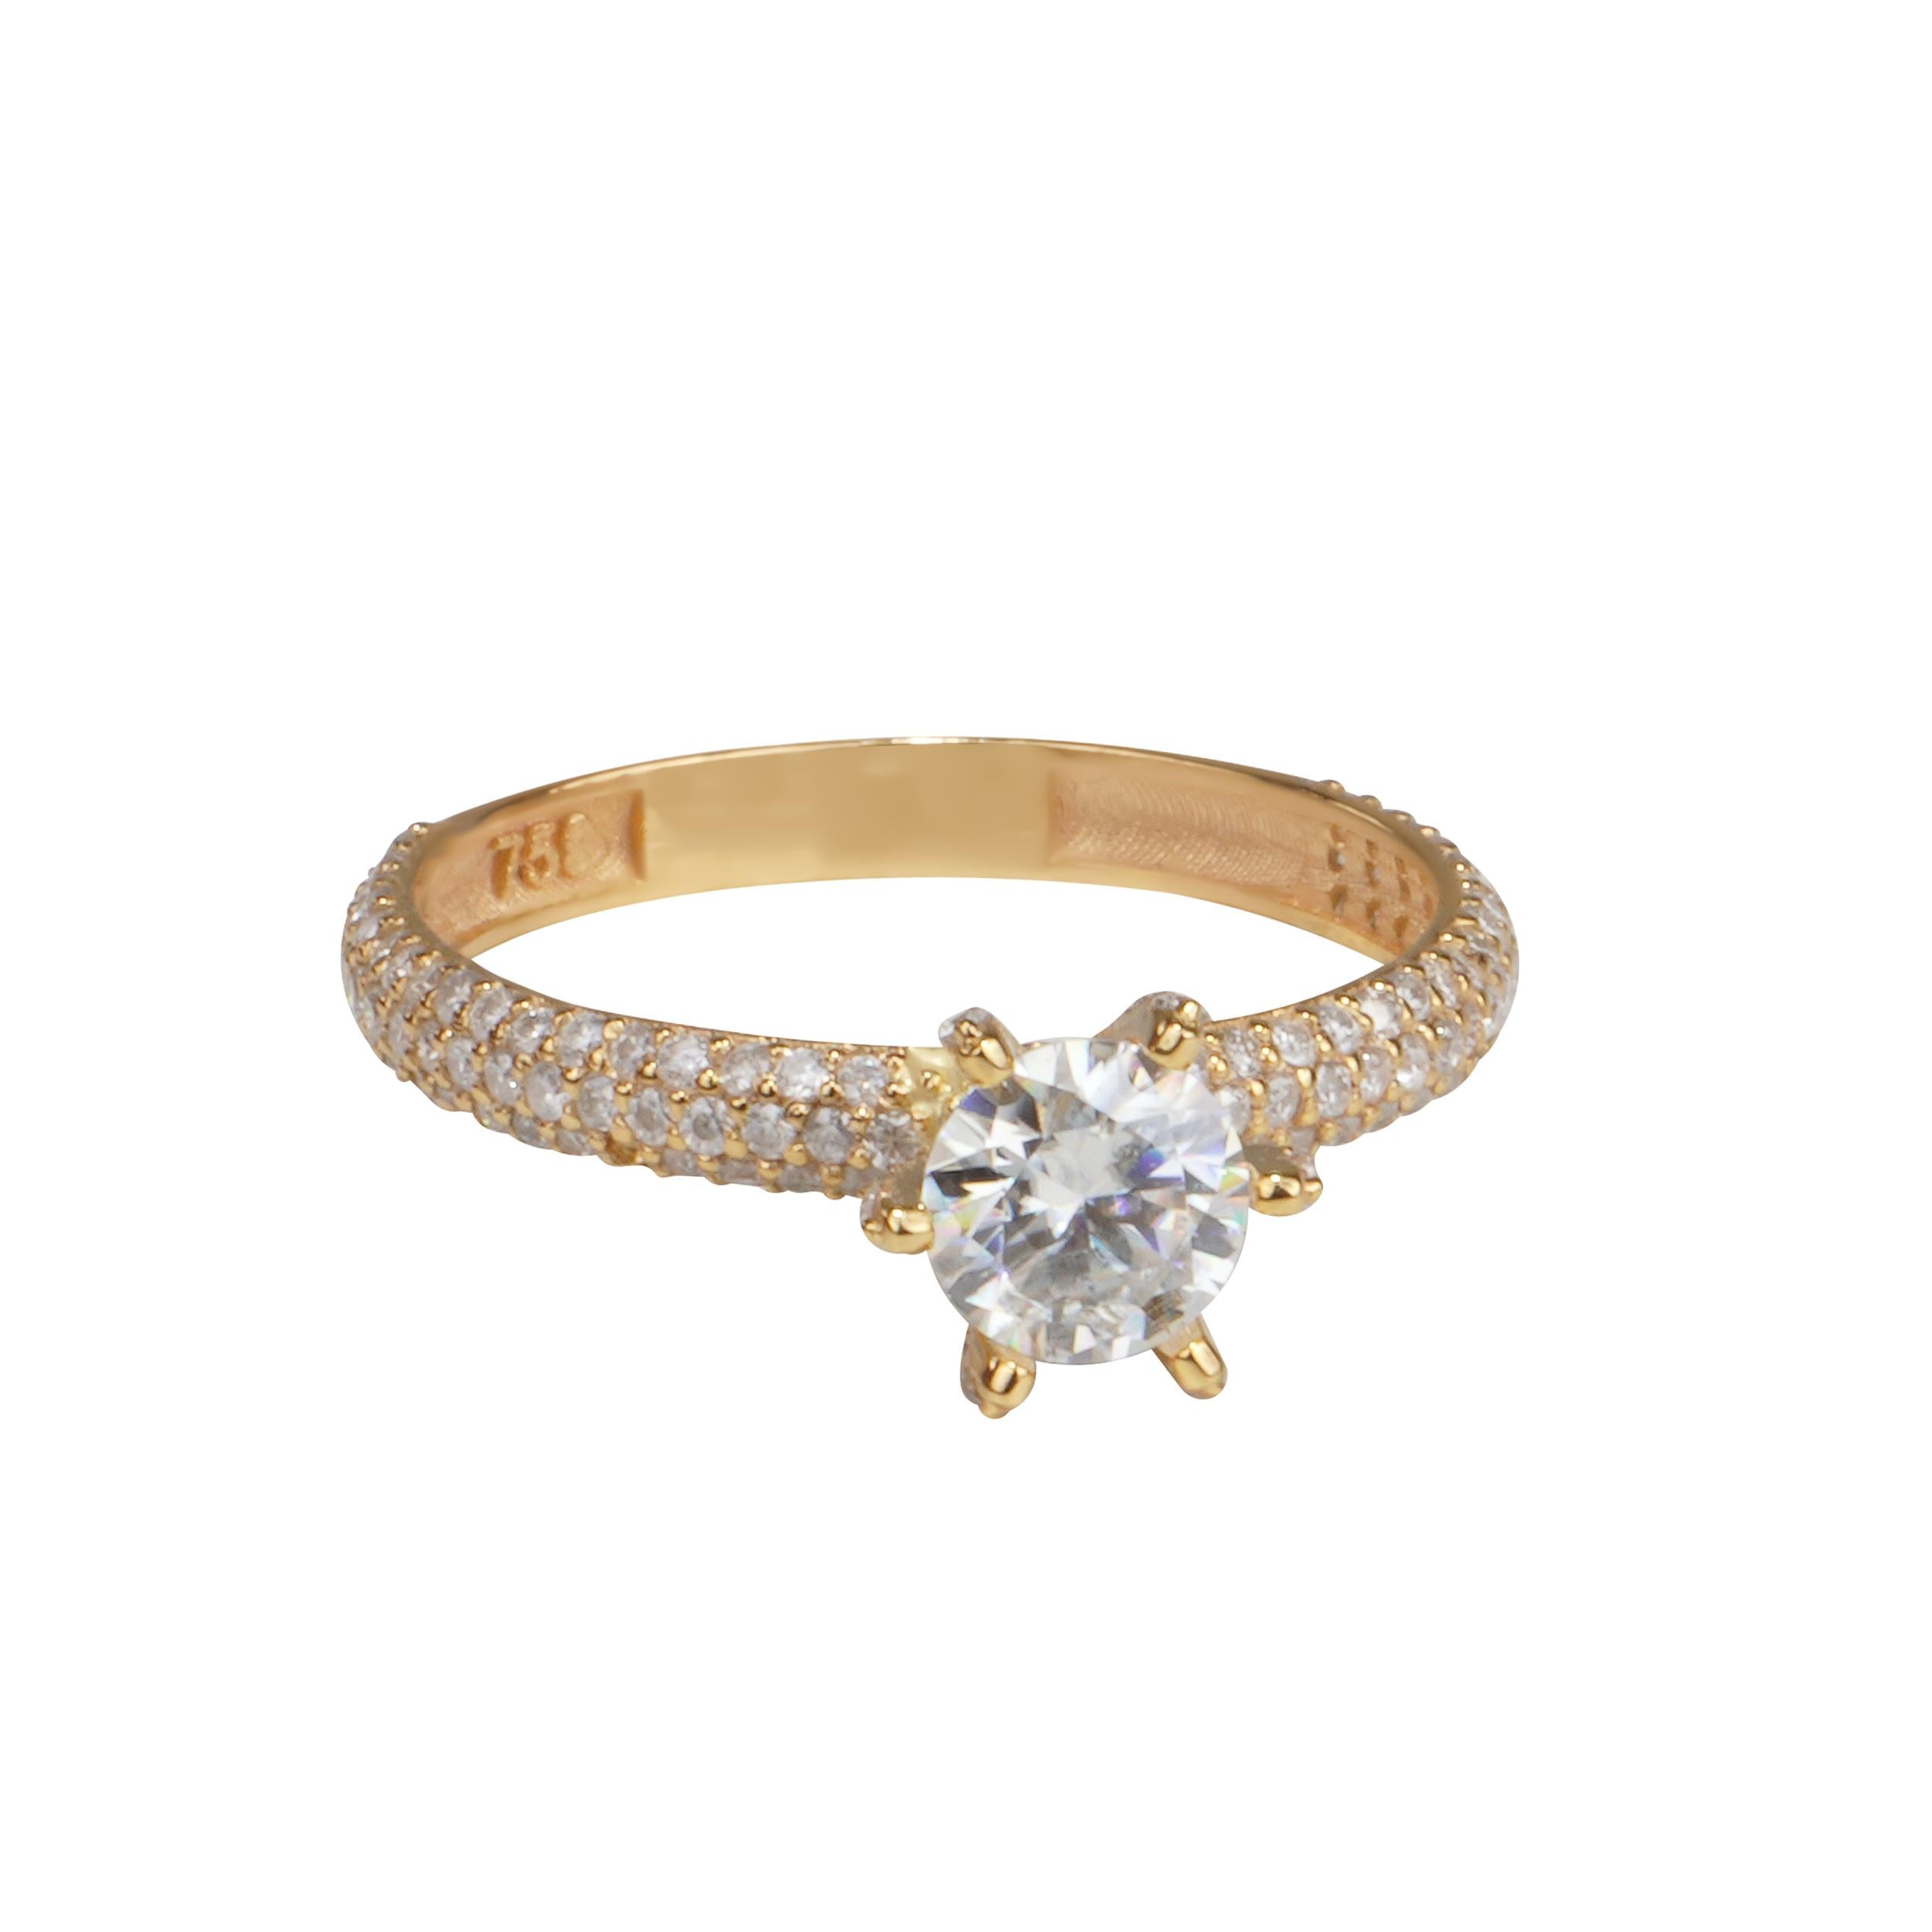 Elizabet Ring: Ein funkelndes Symbol der Liebe
Wenn Sie auf der Suche nach einem schillernden und bedeutungsvollen Geschenk für Ihre/n Liebste/n sind, werden Sie den Ring Elizabet lieben, ein atemberaubendes Schmuckstück, das die Schönheit und den